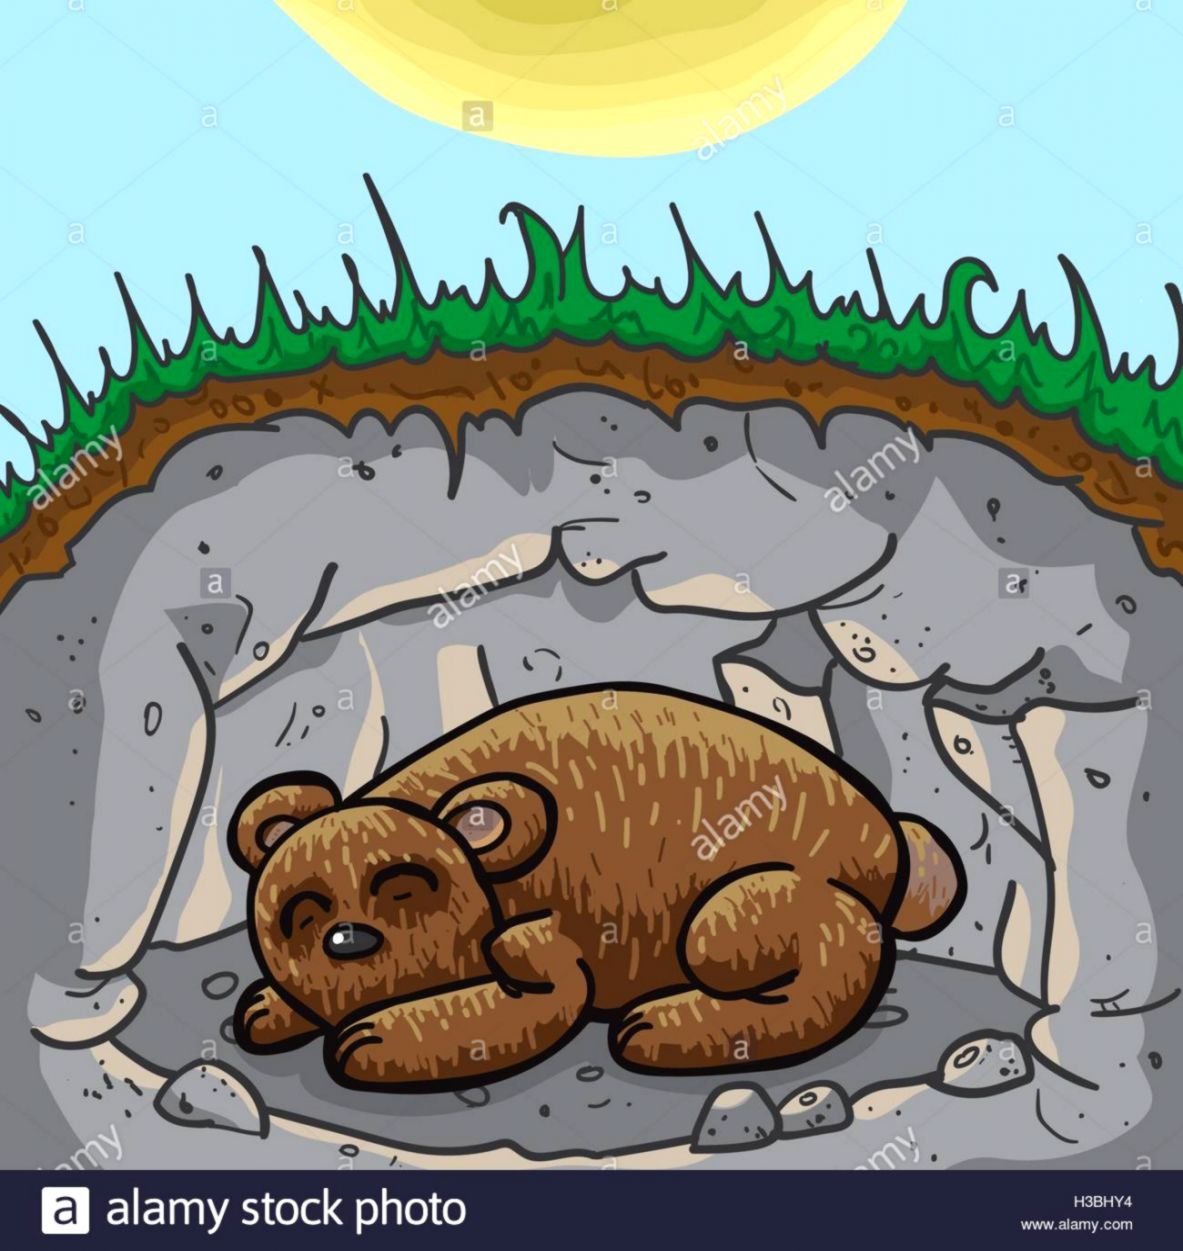 Берлога рисунок. Берлога медведя. Медведь в берлоге рисунок. Берлога рисунок для детей.